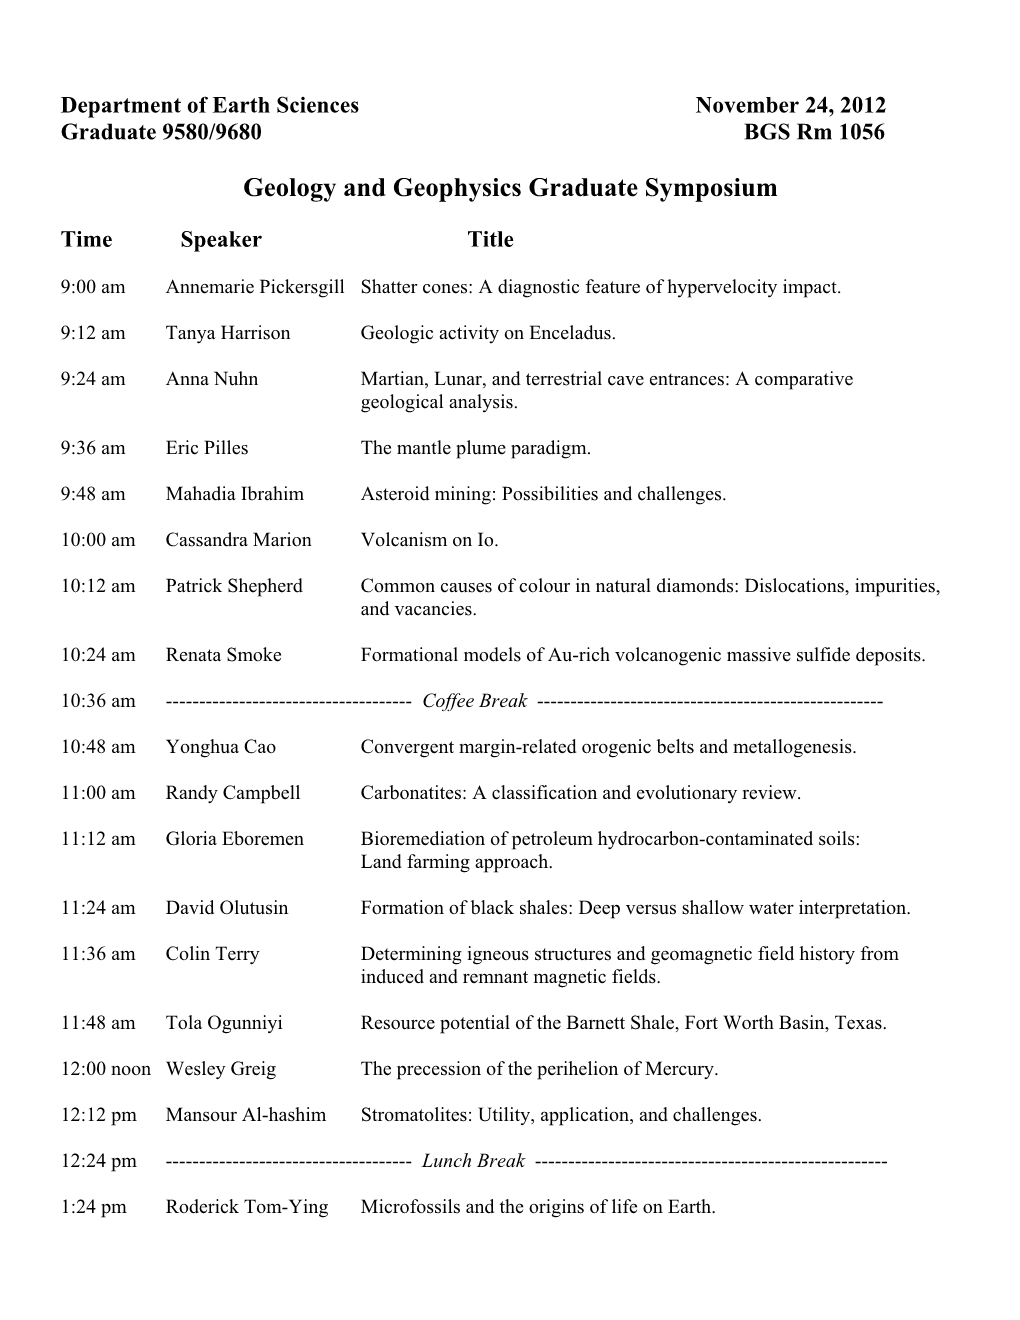 Geology and Geophysics Graduate Symposium